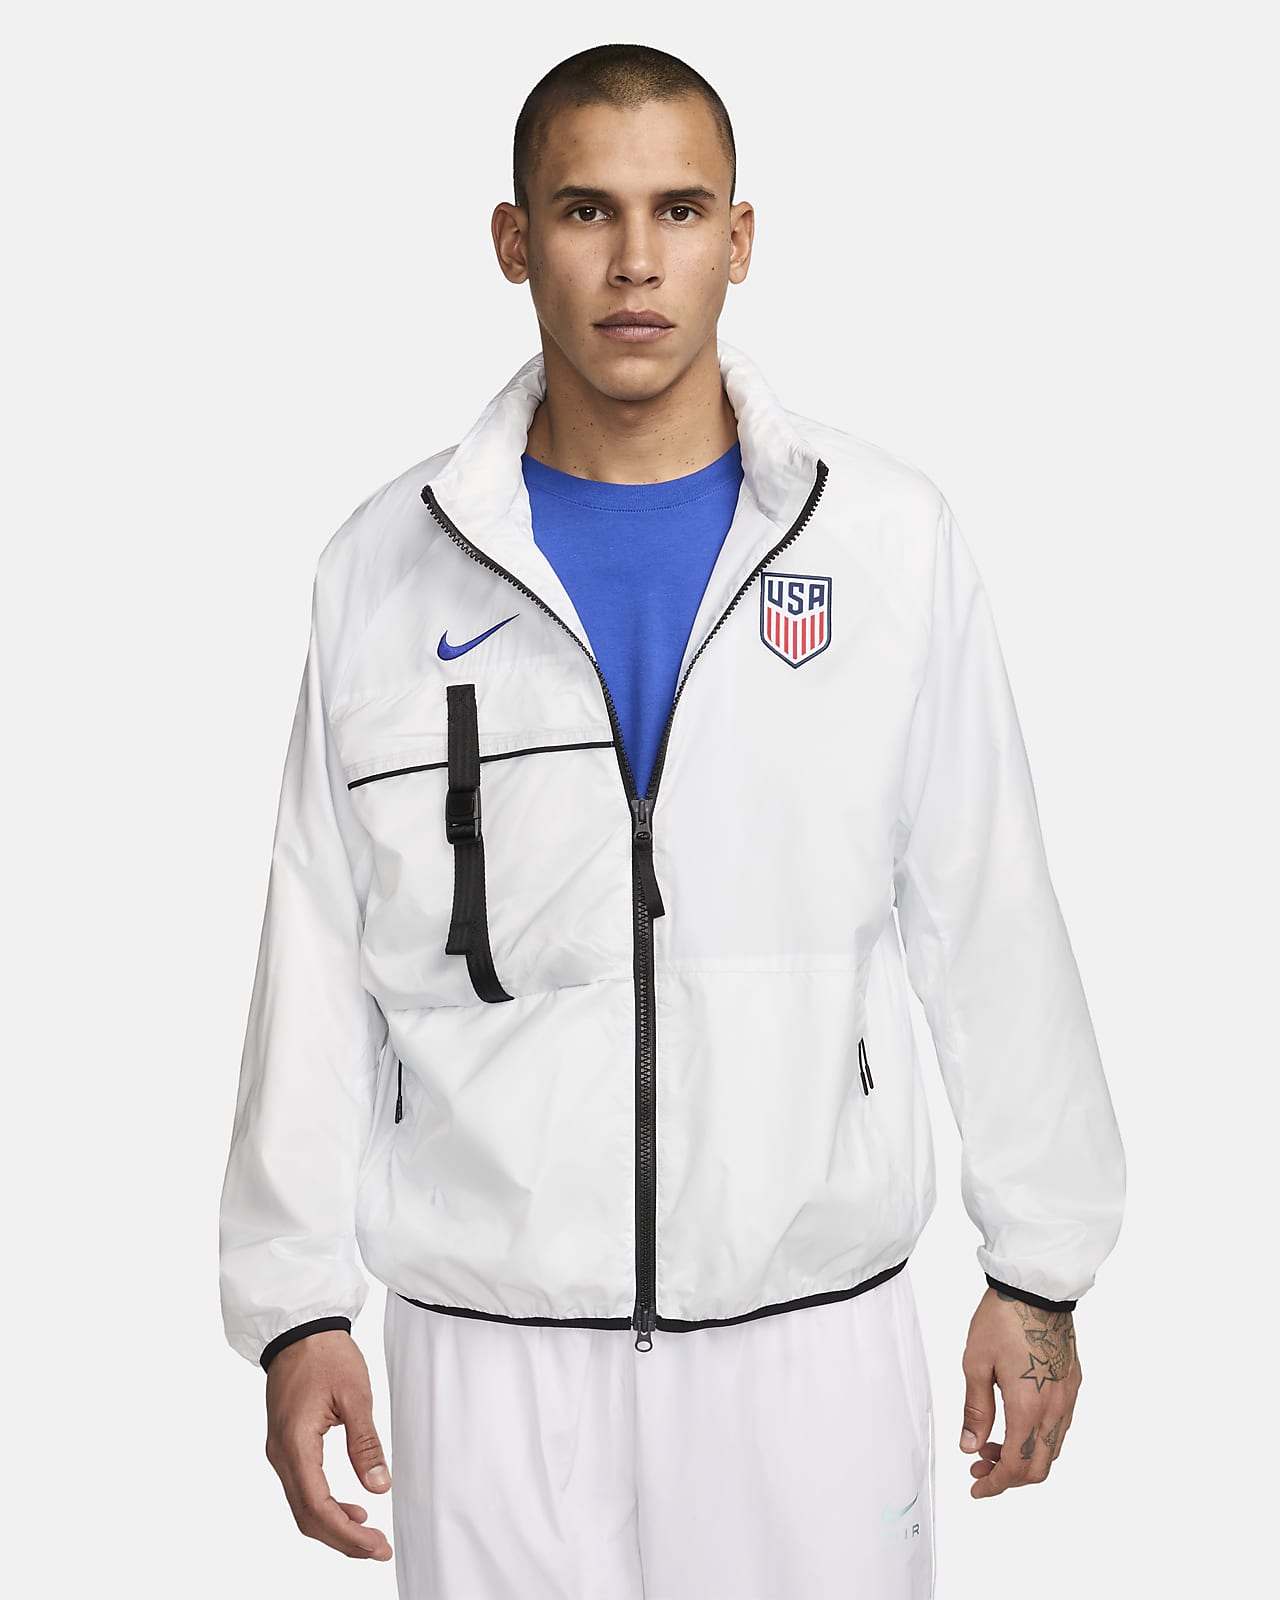 USMNT Men's Nike Soccer Jacket